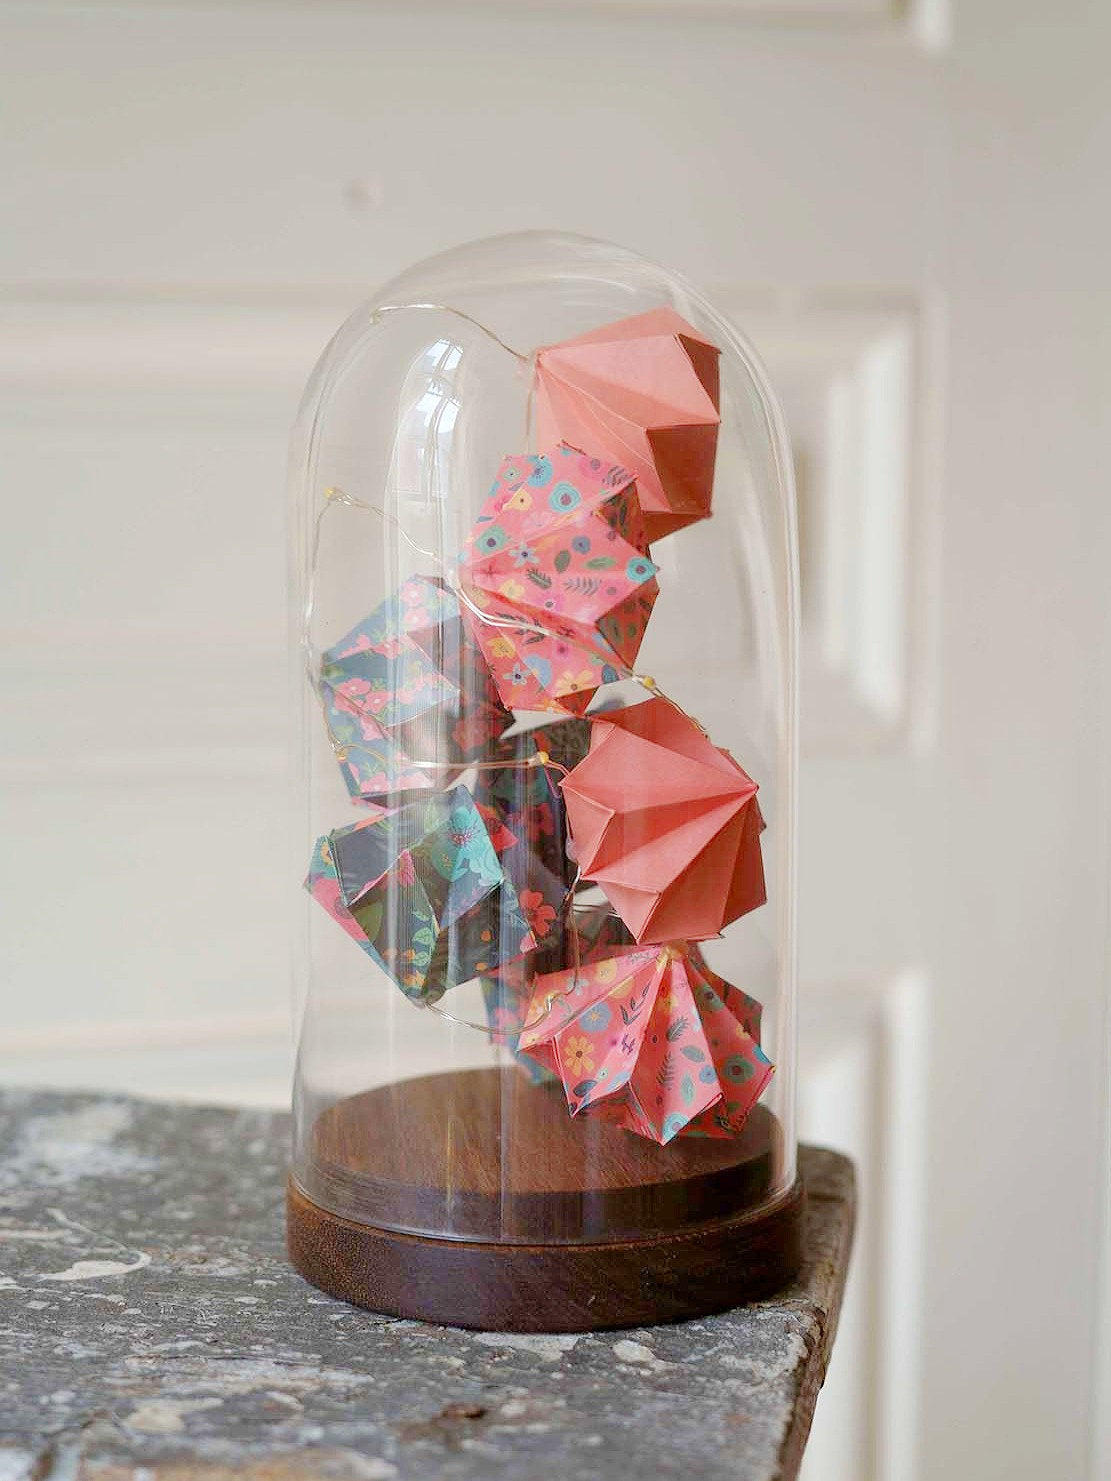 Grande cloche verre - Guirlande lumineuse de diamants en origami - Terracotta